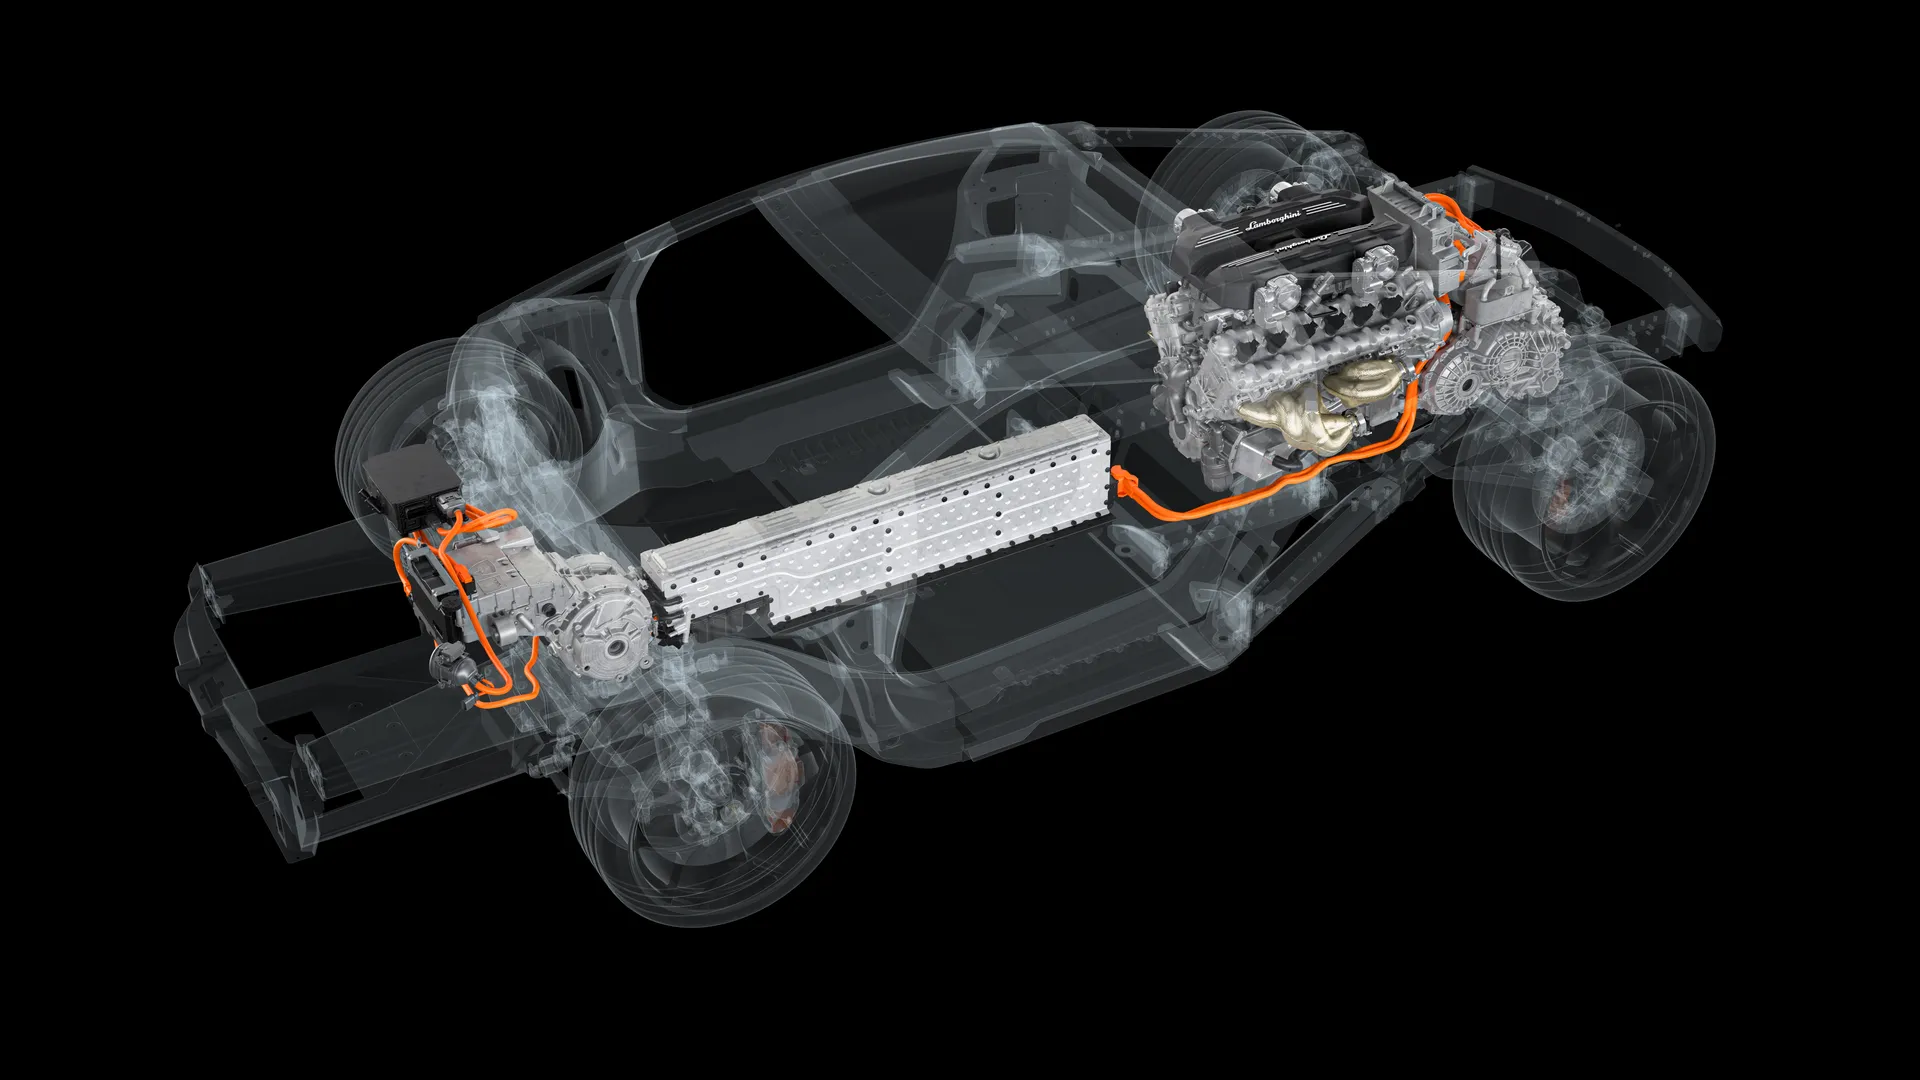 Ya conocemos los detalles del grupo motopropulsor híbrido que moverá al sucesor del Lamborghini Aventador